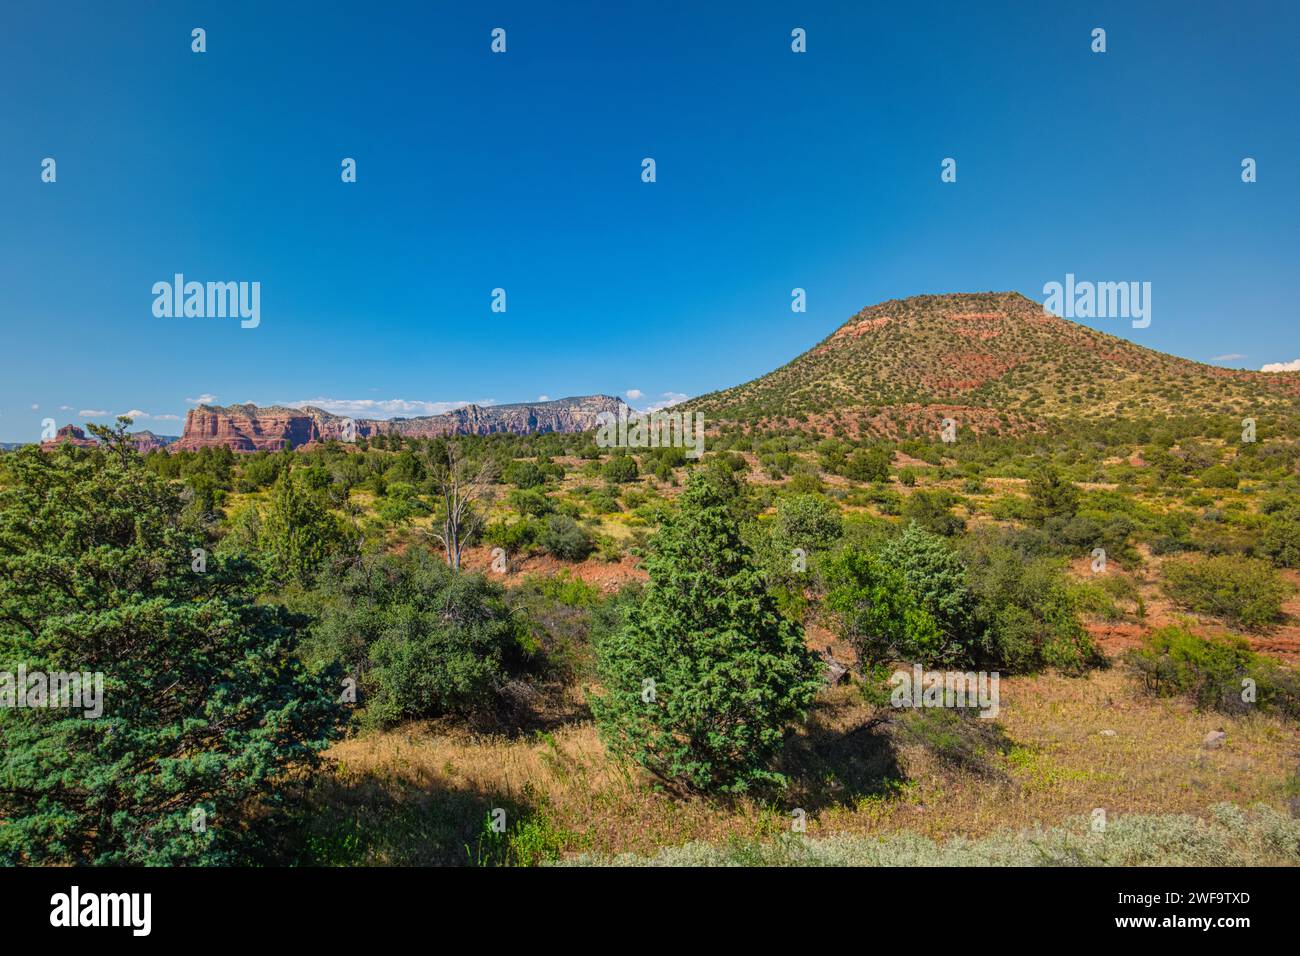 Montagna in lontananza, adornata da lussureggianti alberi, cespugli e arbusti Foto Stock